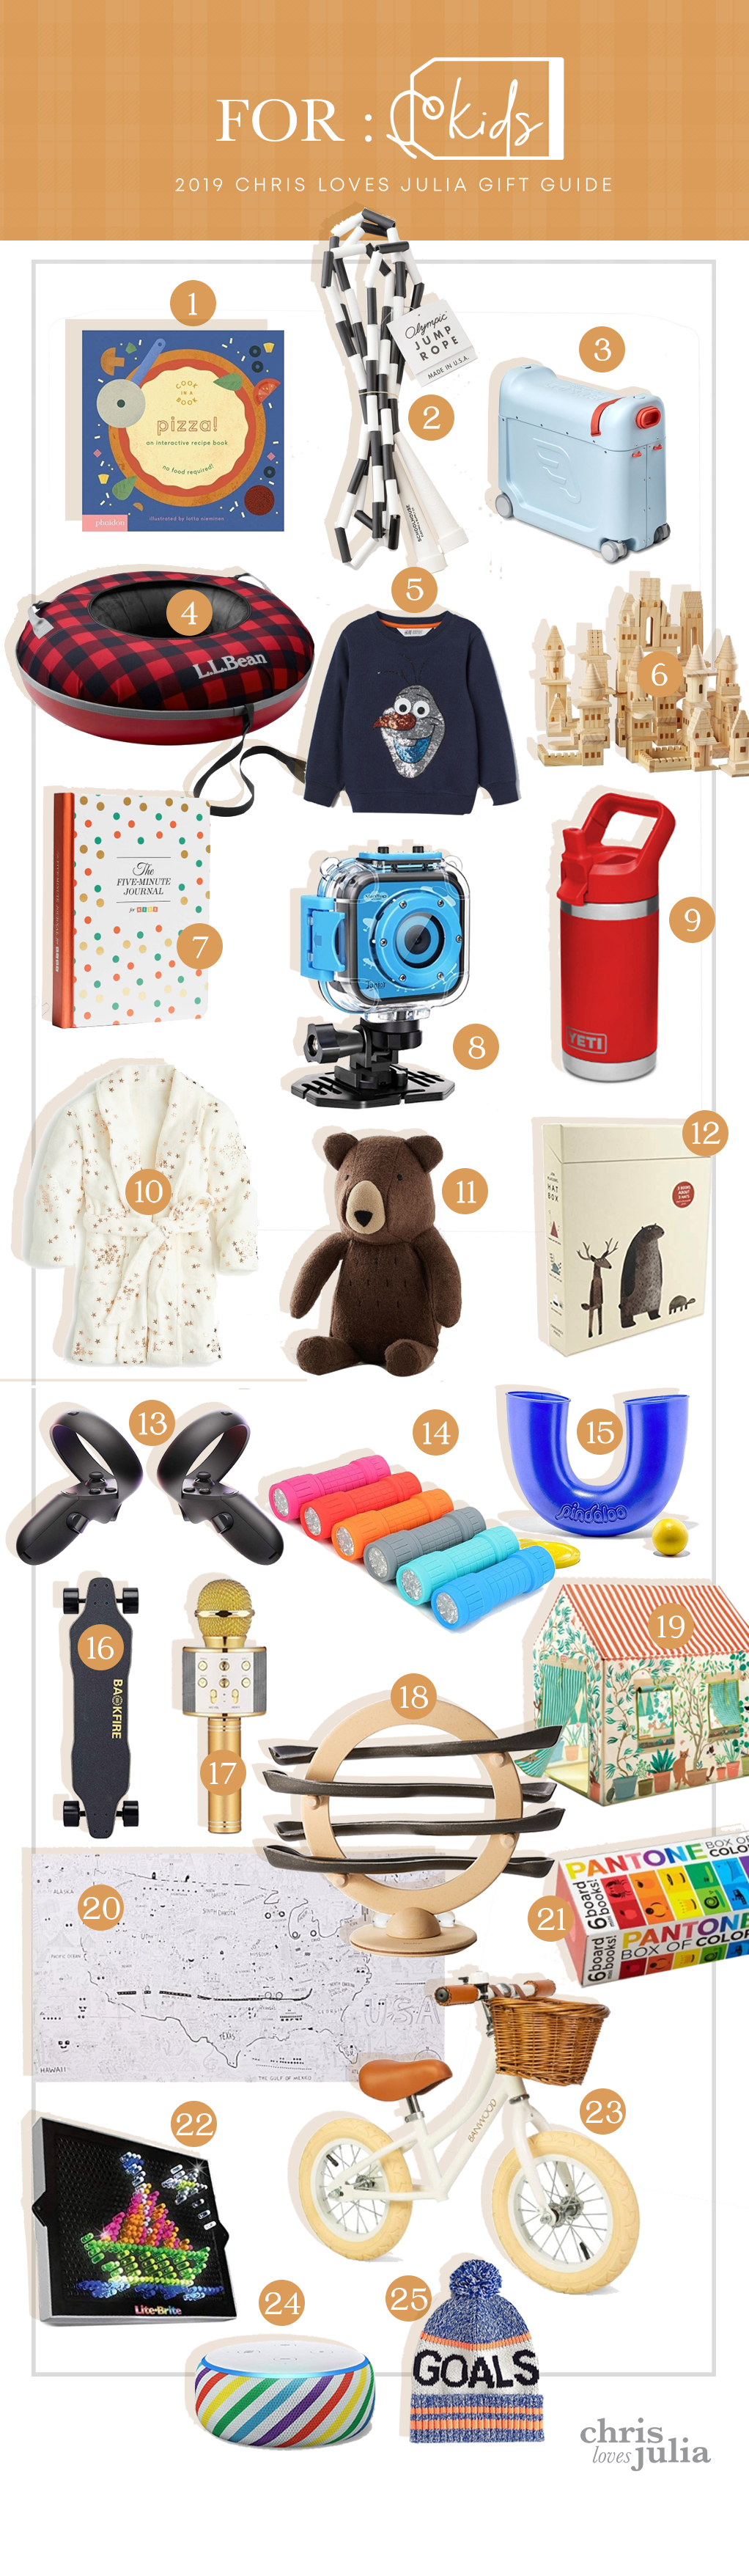 16 Best Gift Ideas For Kids - Chris Loves Julia